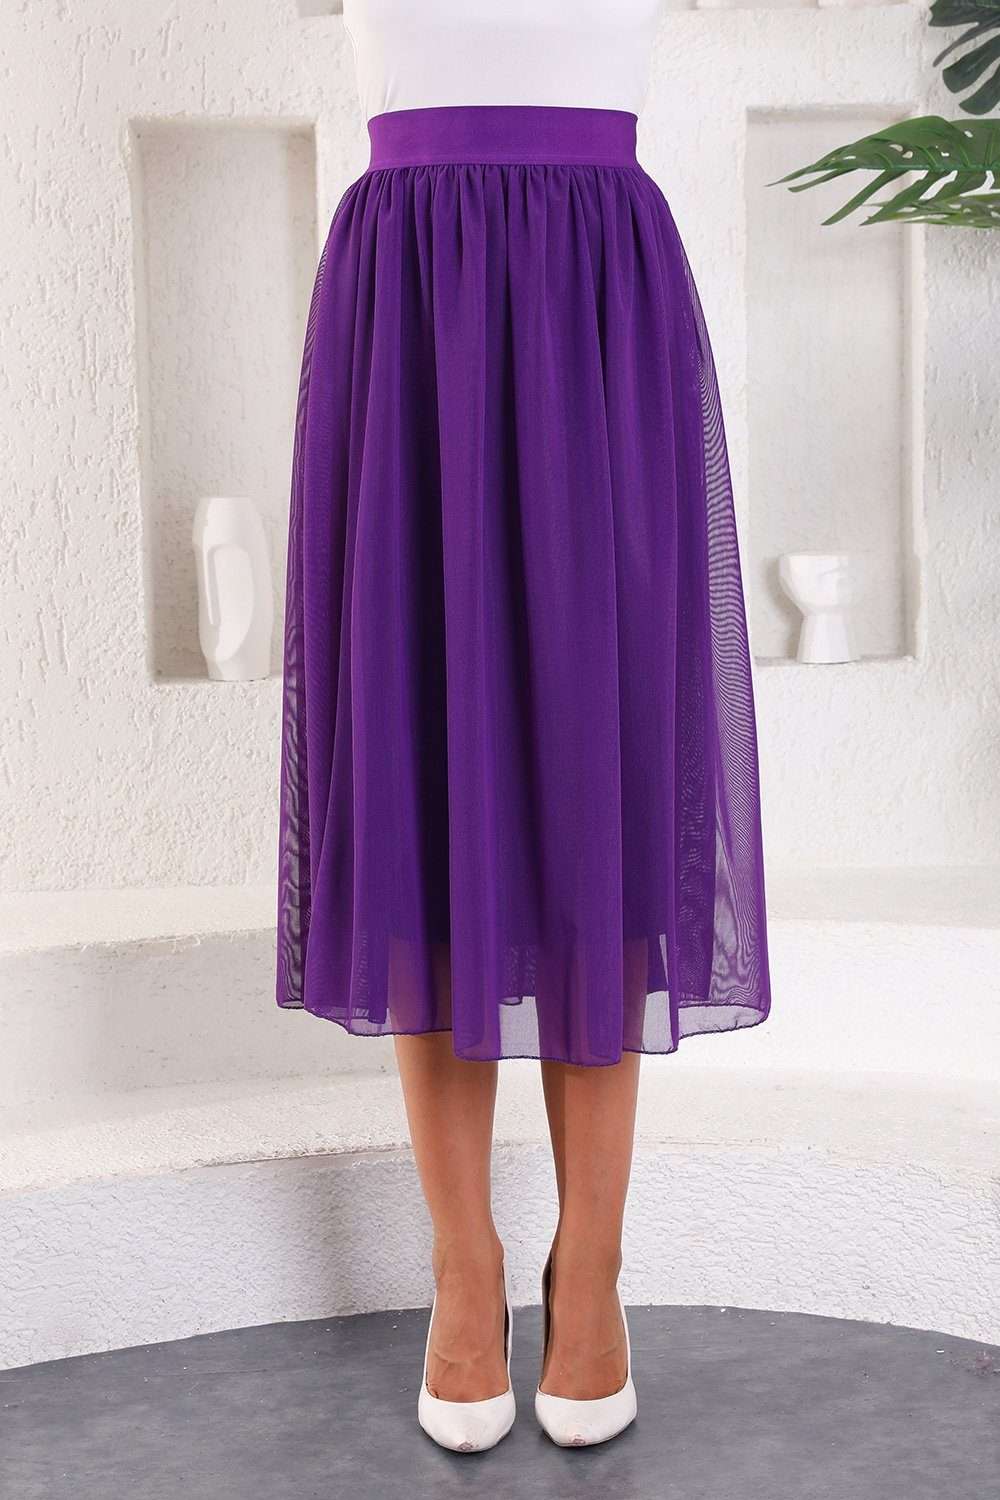 Юбка из тюля, юбка макси, вечерняя юбка в винтажном стиле